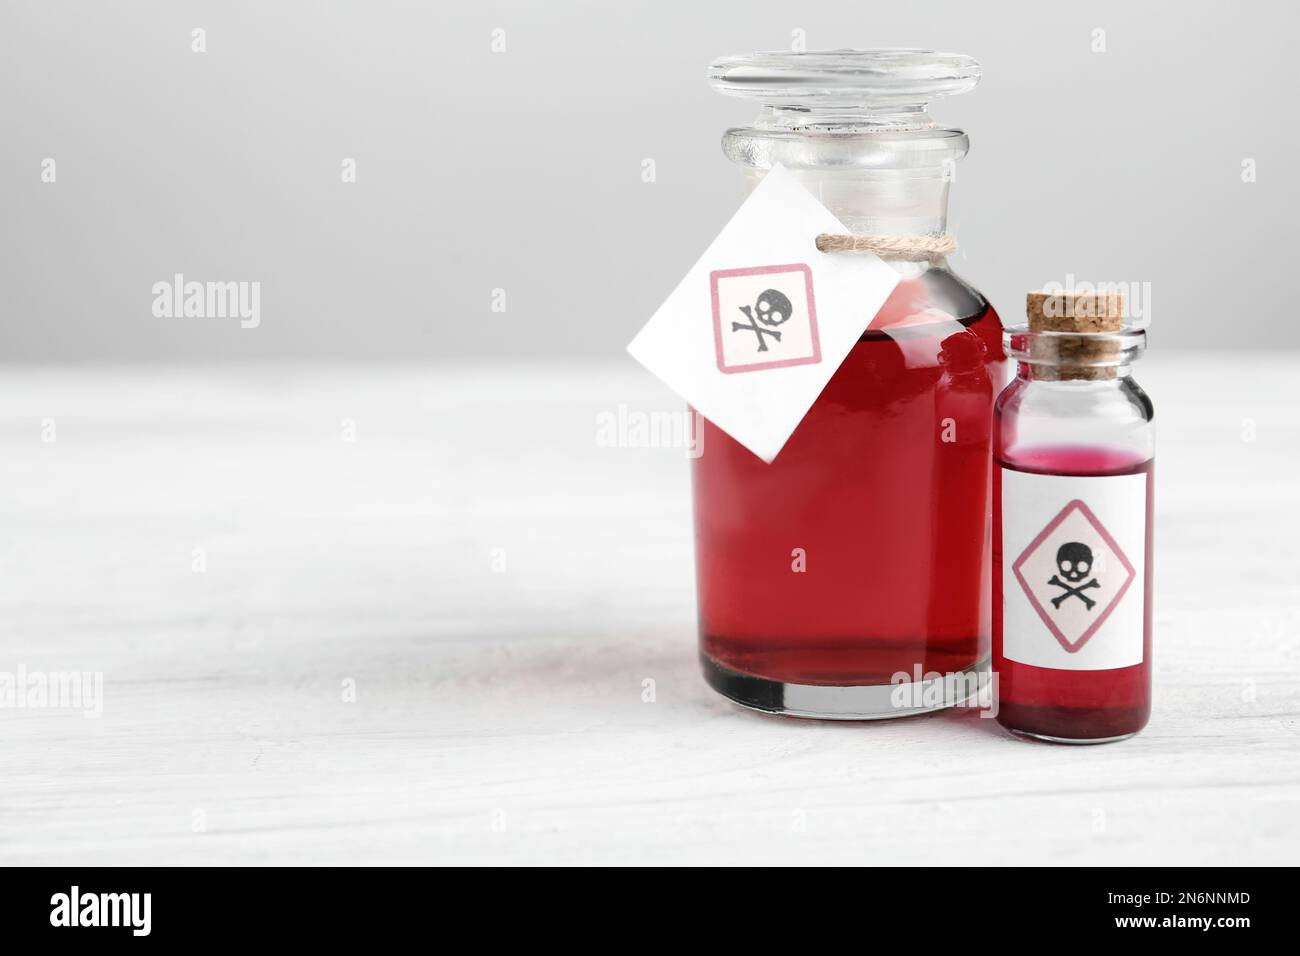 Flacon en verre et flacon de poison avec panneaux d'avertissement sur une table en bois blanc. Espace pour le texte Banque D'Images